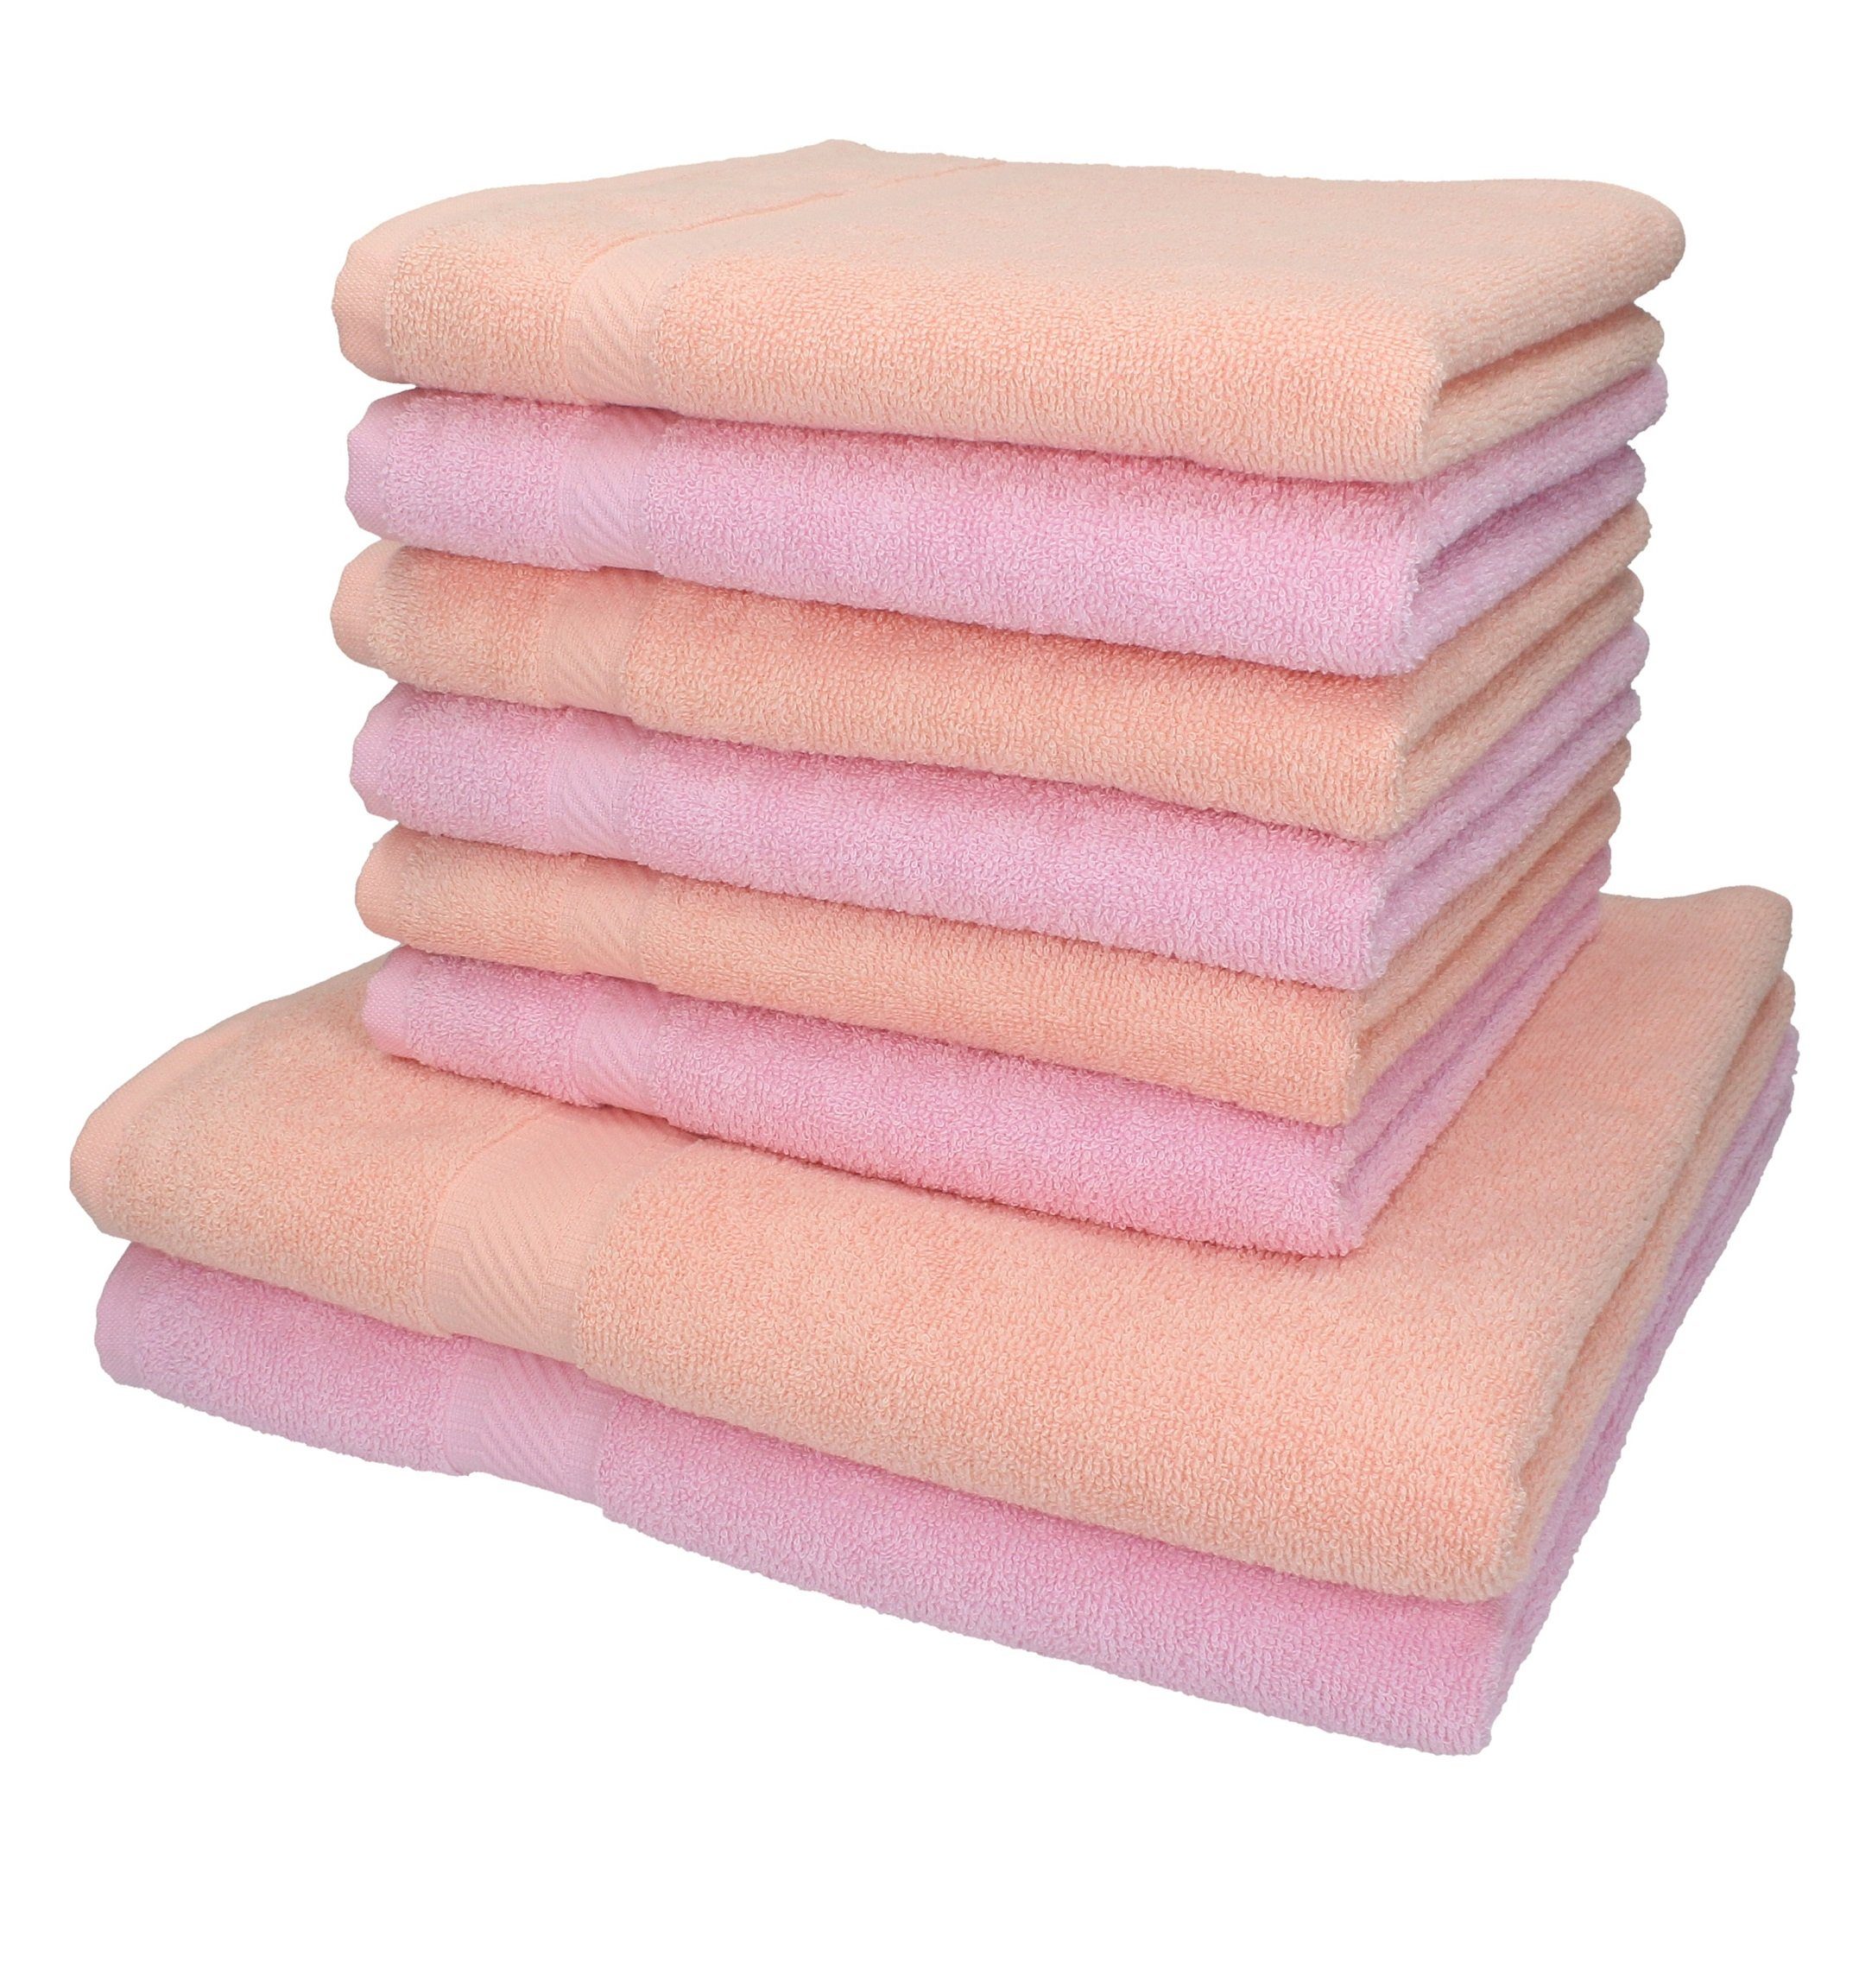 Betz Handtuch Set 8-tlg. Handtuch-Set Palermo Farbe apricot und rosé, 100%  Baumwolle